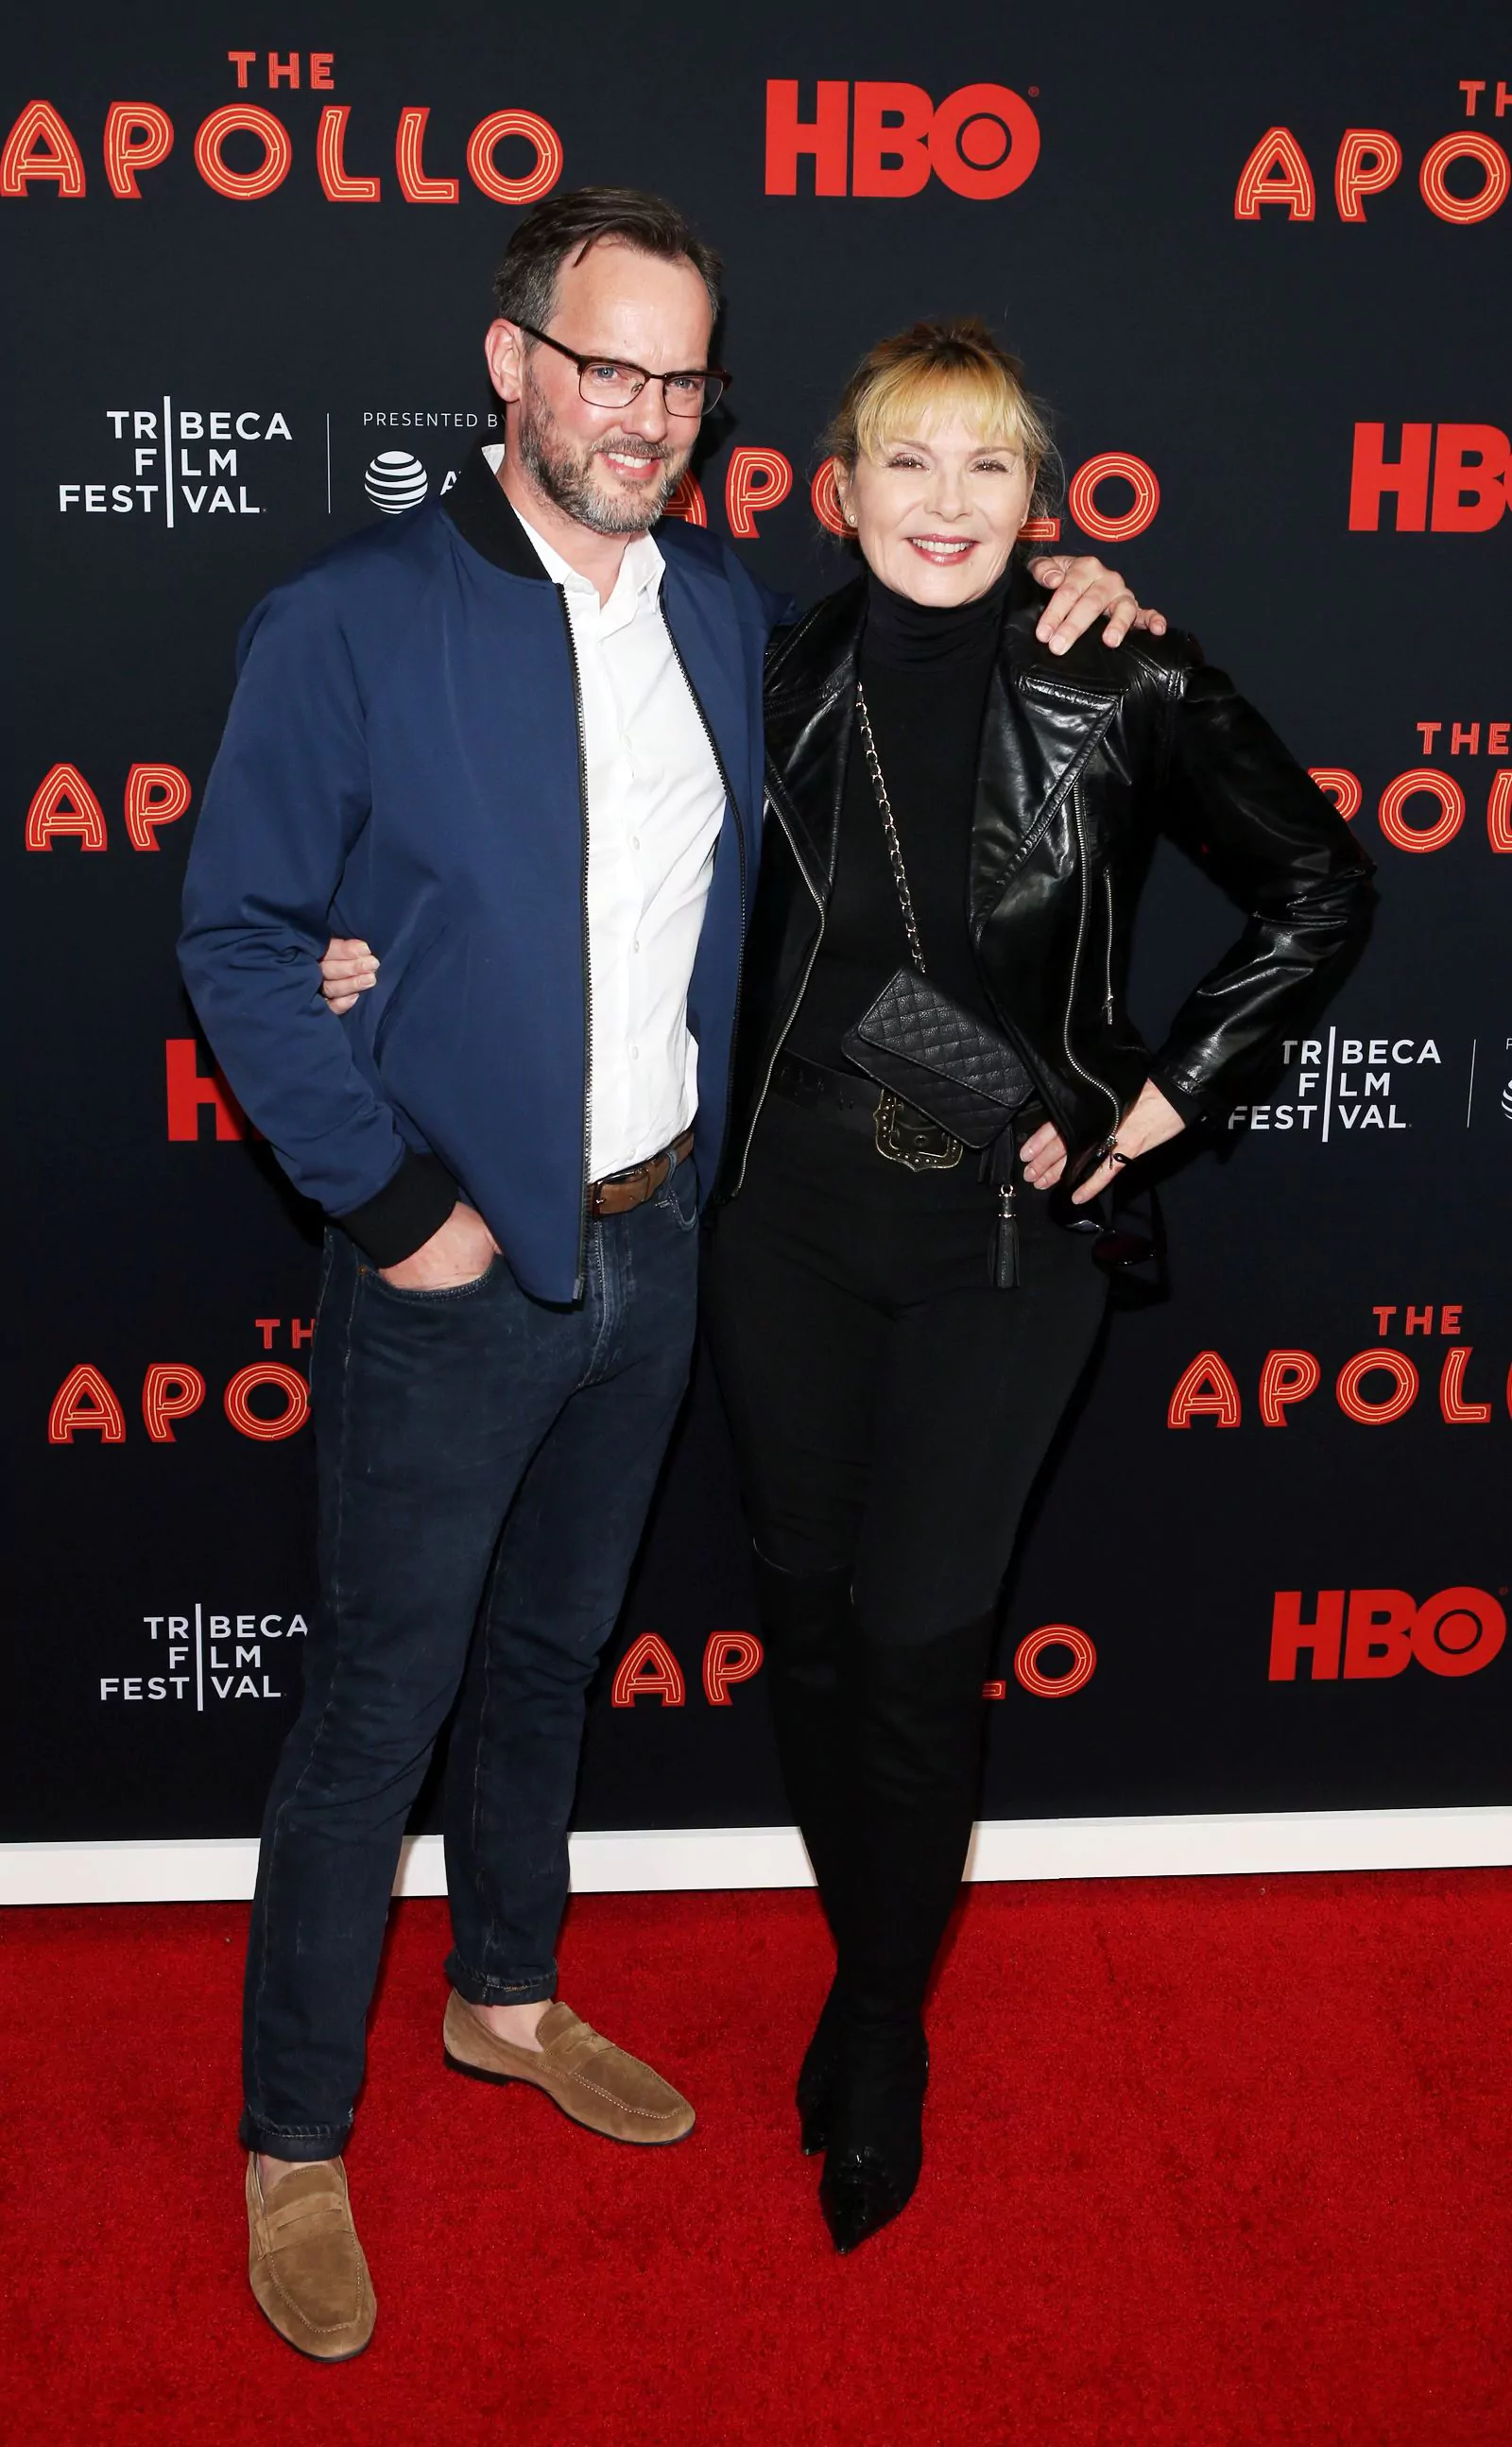 Ким Кэттролл с бойфрендом Расселом Томасом на премьере фильма «Аполло» в рамках кинофестиваля в Трайбеке, 24 апреля 2019 г.